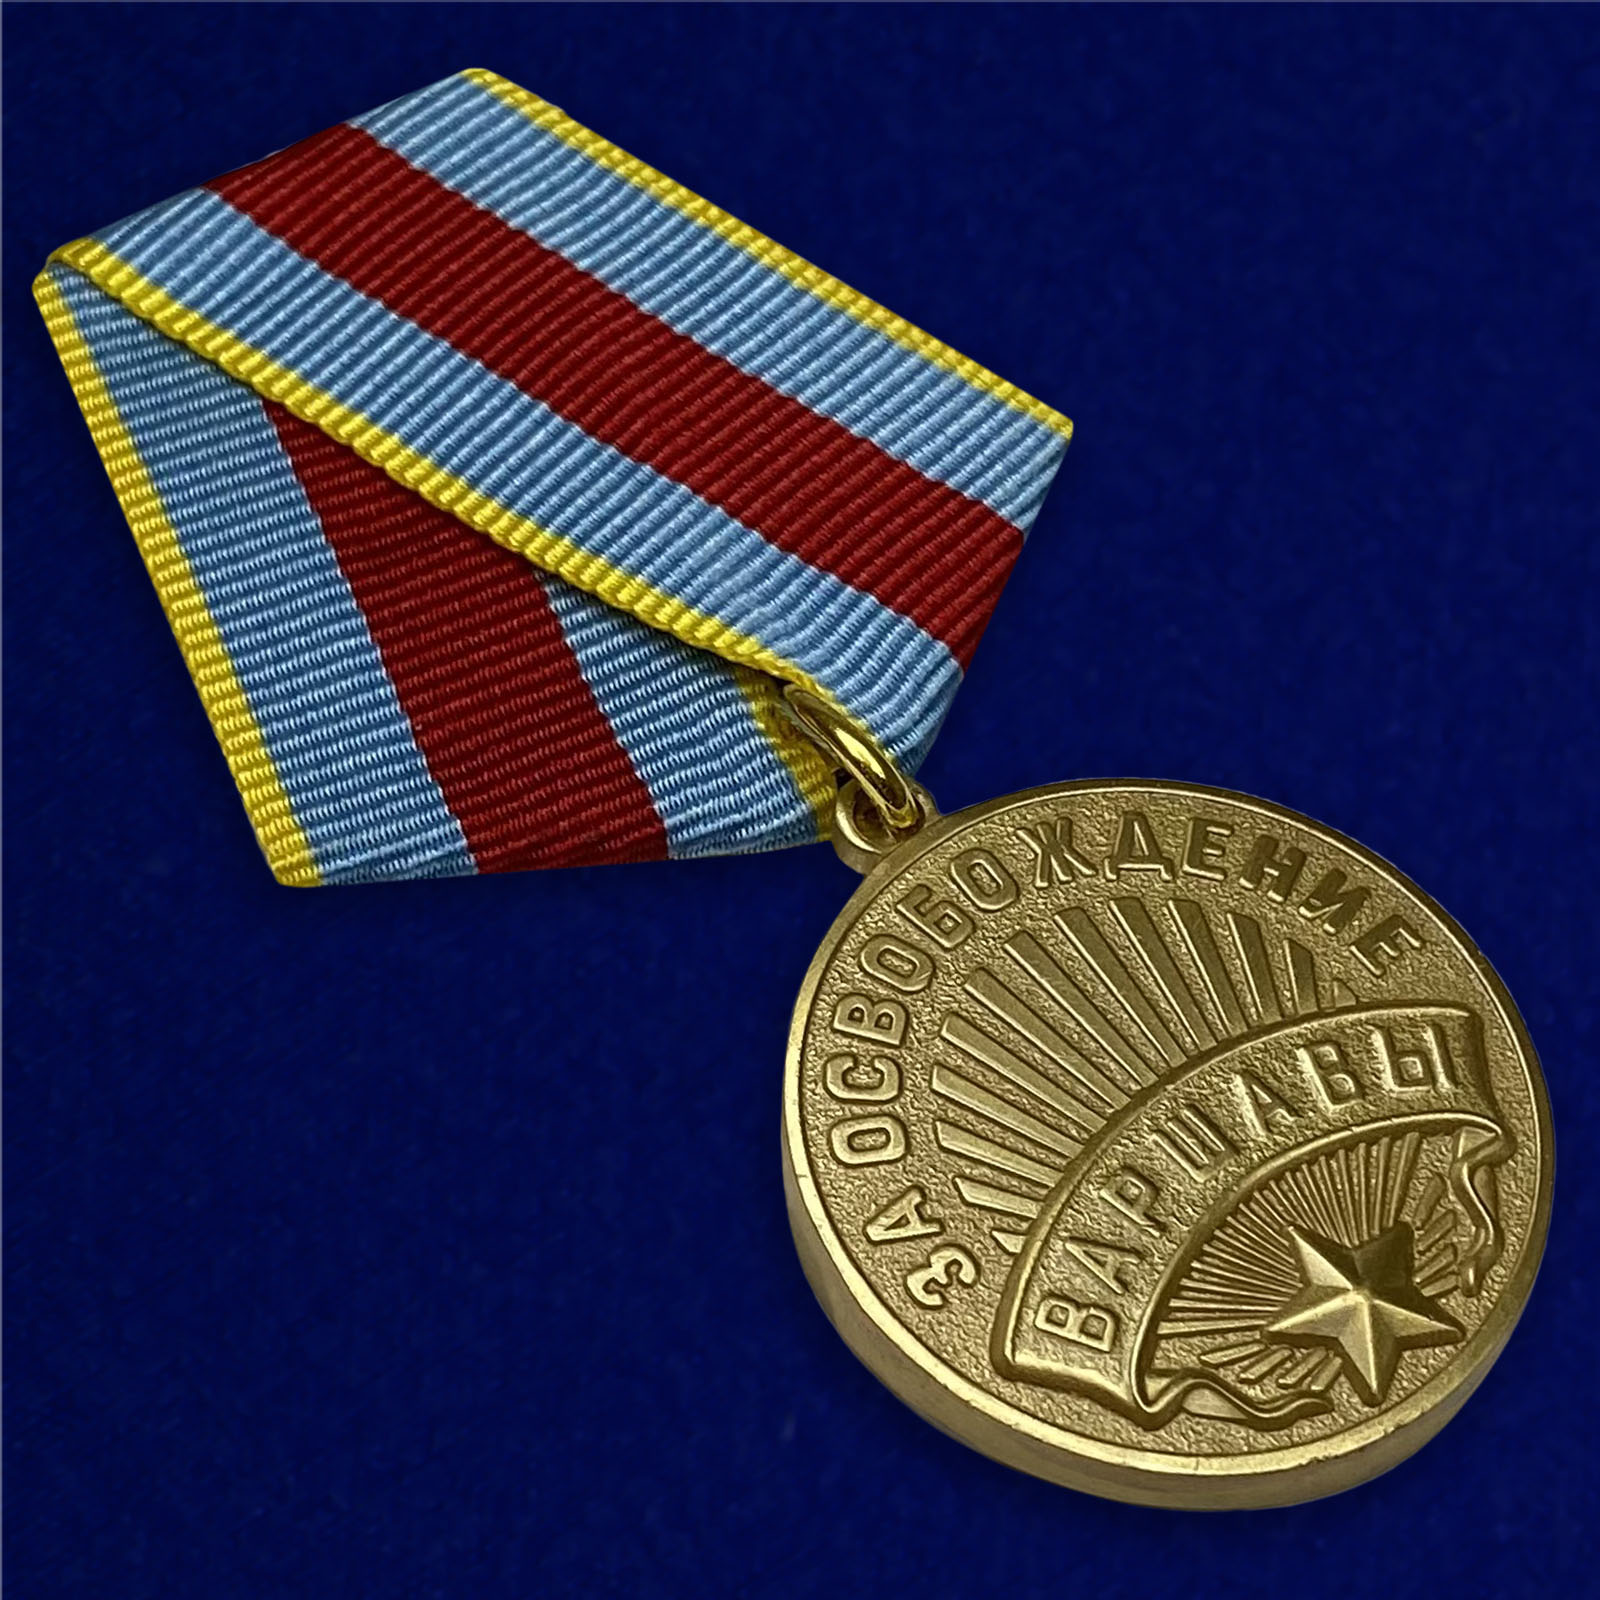 Медаль За освобождение Варшавы